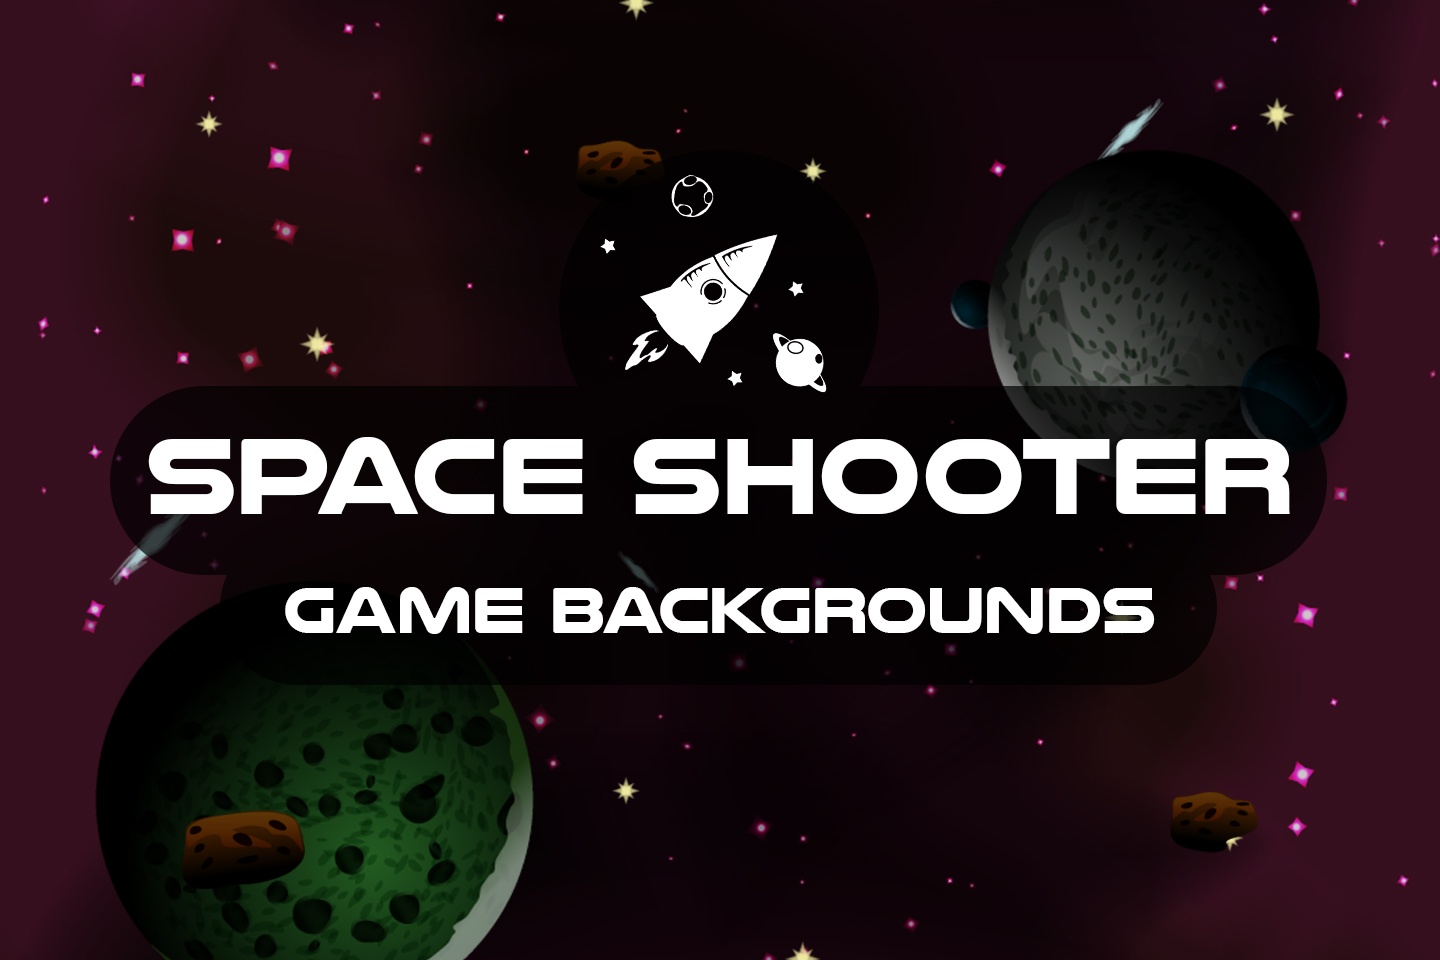 Nền game Space Shooter 2D là một lựa chọn tuyệt vời dành cho các game thủ yêu thích thể loại bắn súng. Với gameplay hấp dẫn, đồ họa đẹp mắt và âm thanh sống động, bạn không nên bỏ lỡ cơ hội trải nghiệm một trong những tựa game bắn súng tốt nhất của năm.